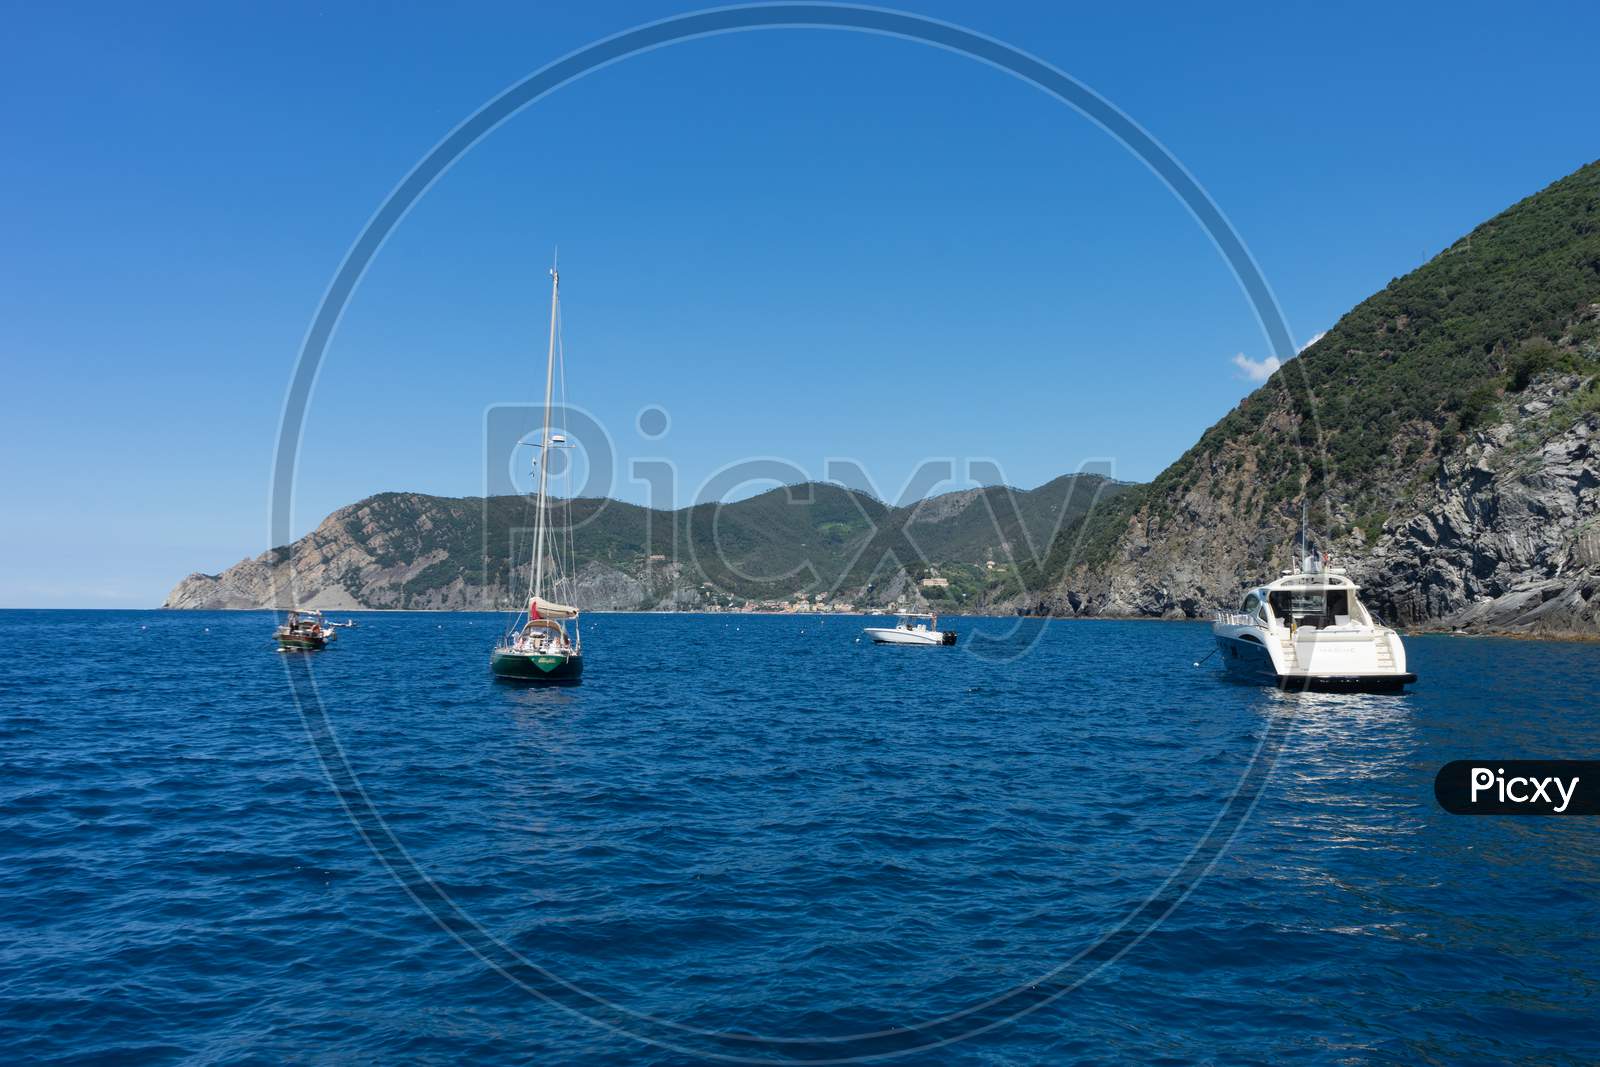 Riomaggiore, Cinque Terre, Italy - 26 June 2018: Boats And Yachts On The Ocean, Italian Riviera Of Riomaggiore, Cinque Terre, Italy